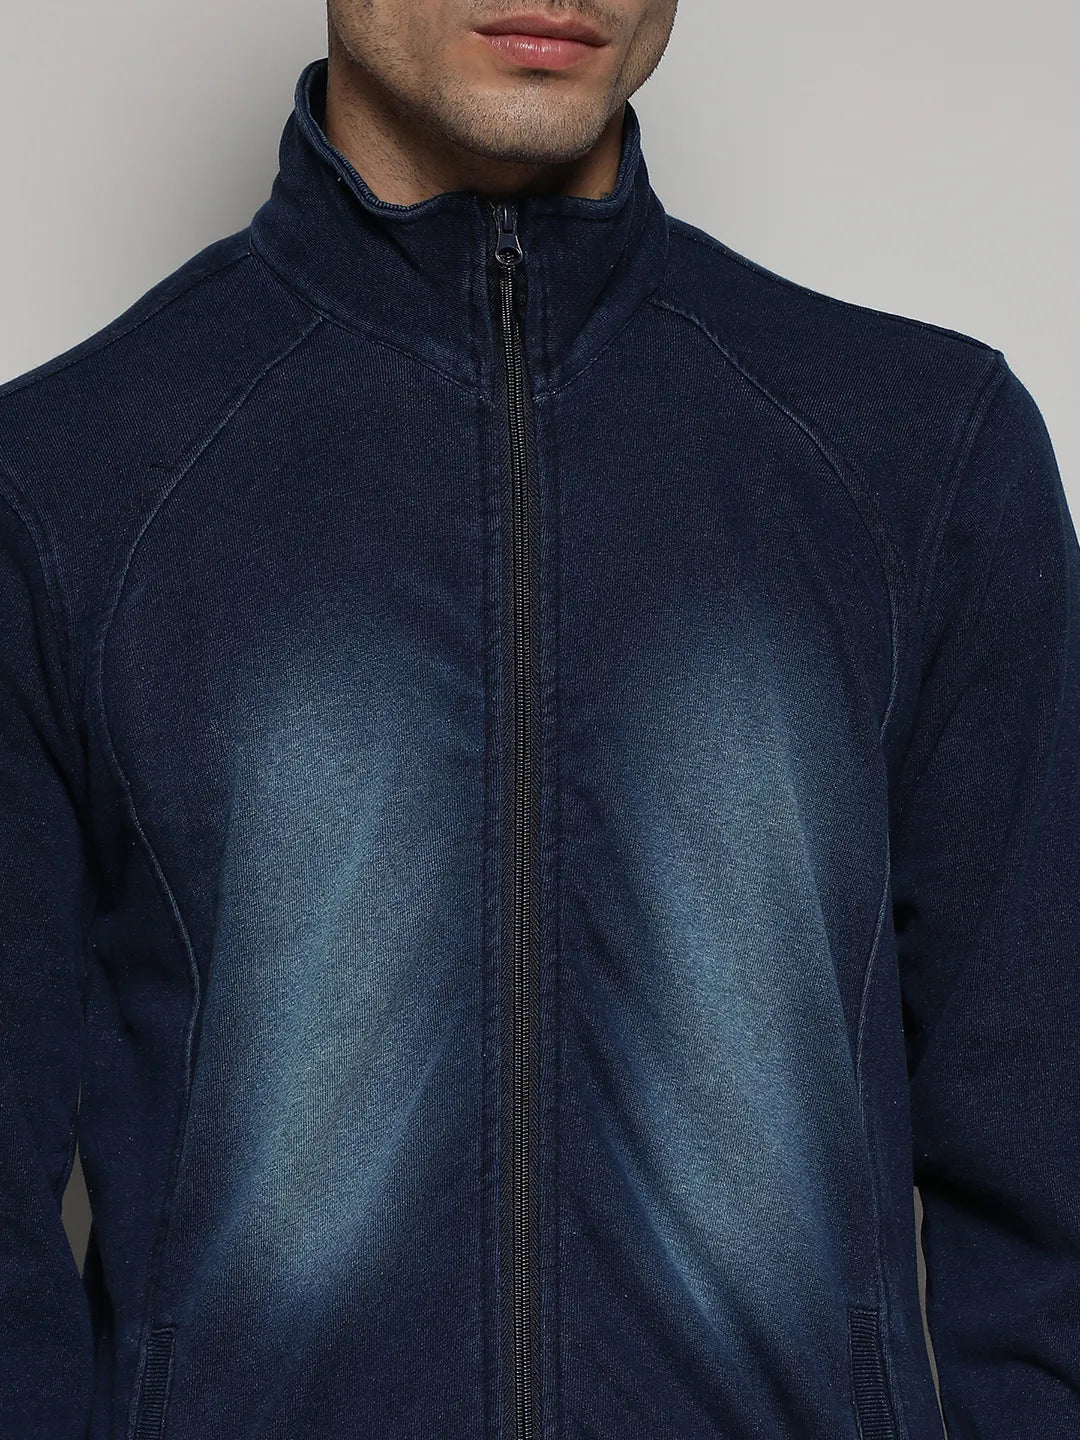 Navy Blue Zip-Front Dark-Wash Denim Jacket